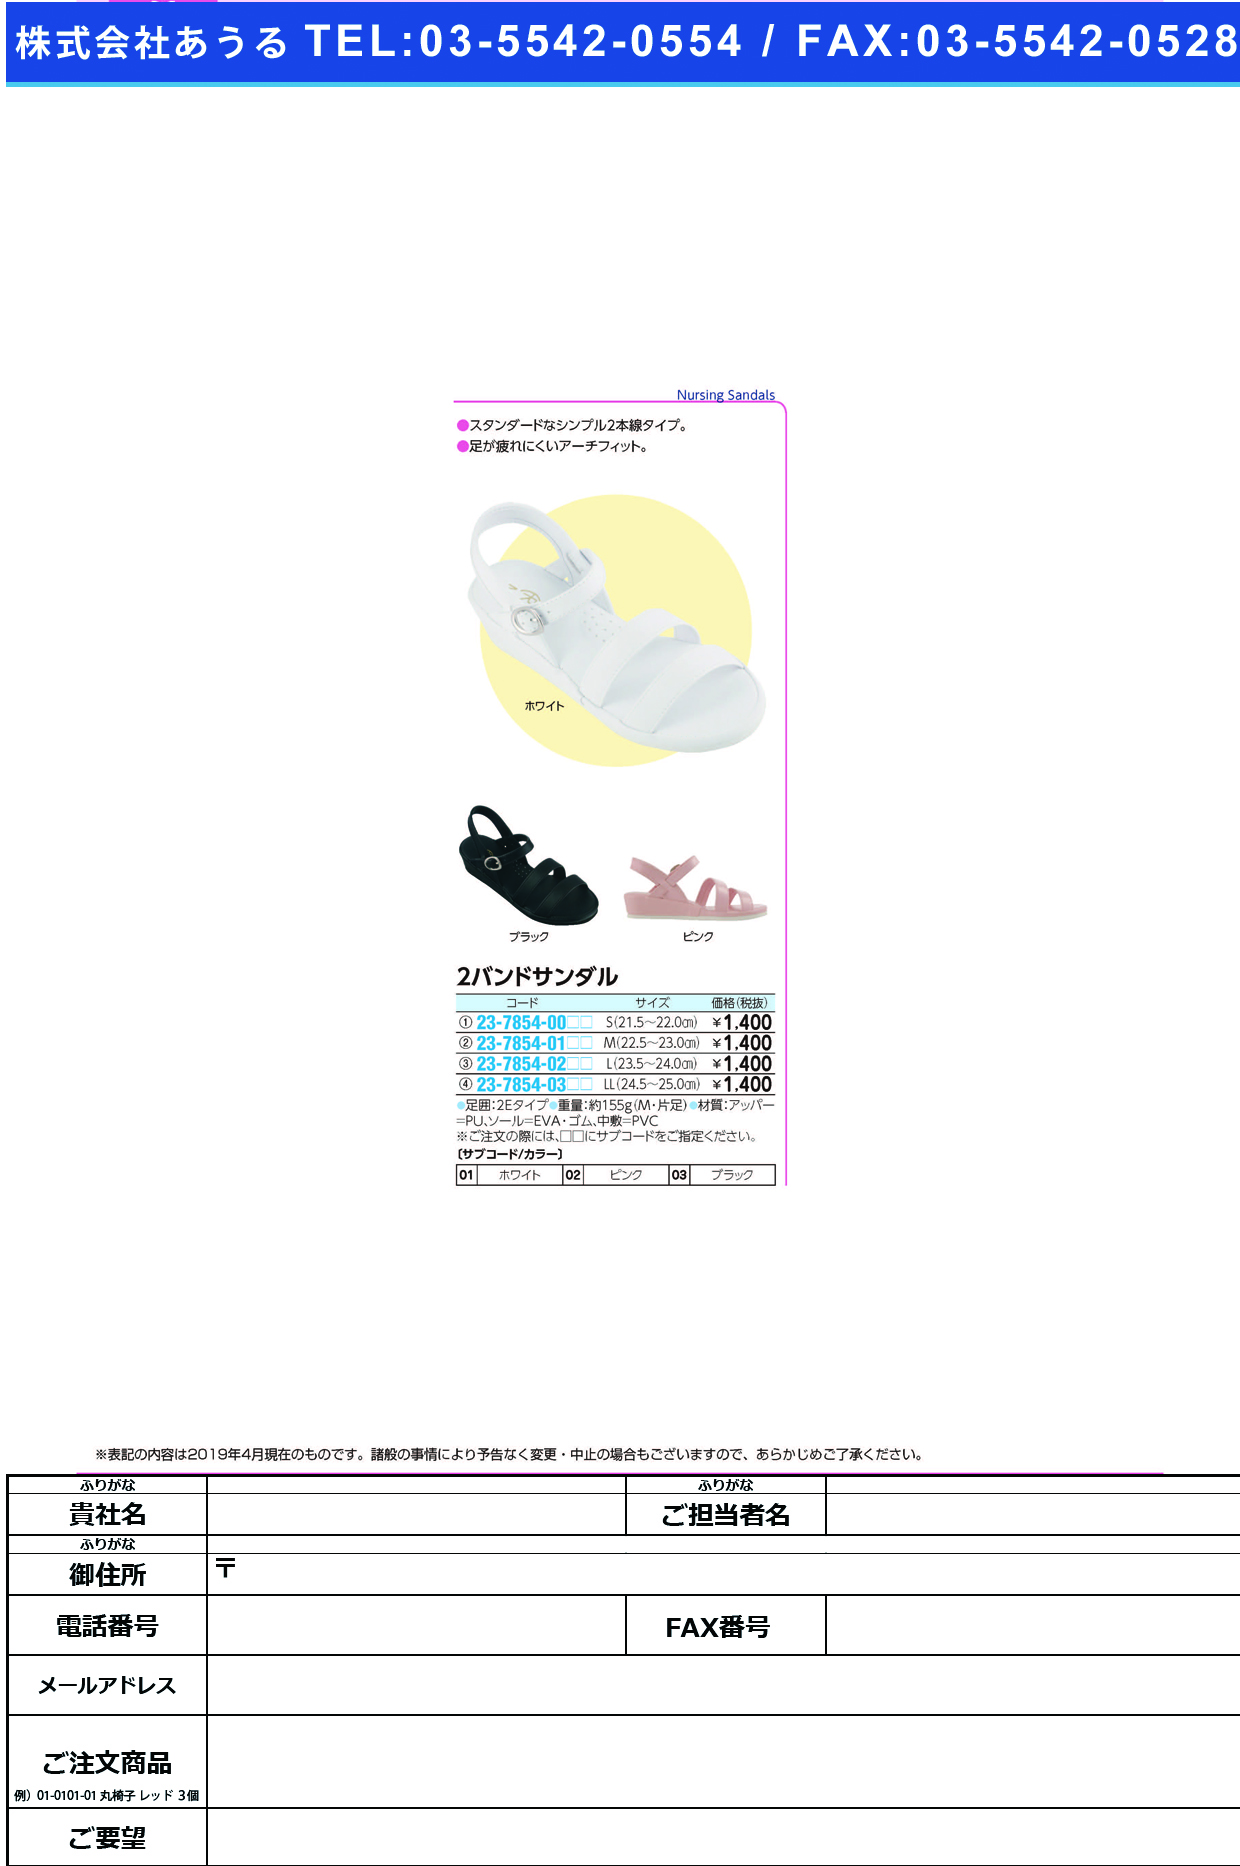 (23-7854-00)２バンドサンダル S(21.5-22.0CM) ﾂｰﾊﾞﾝﾄﾞｻﾝﾀﾞﾙ ピンク(ファーストレイト)【1足単位】【2019年カタログ商品】